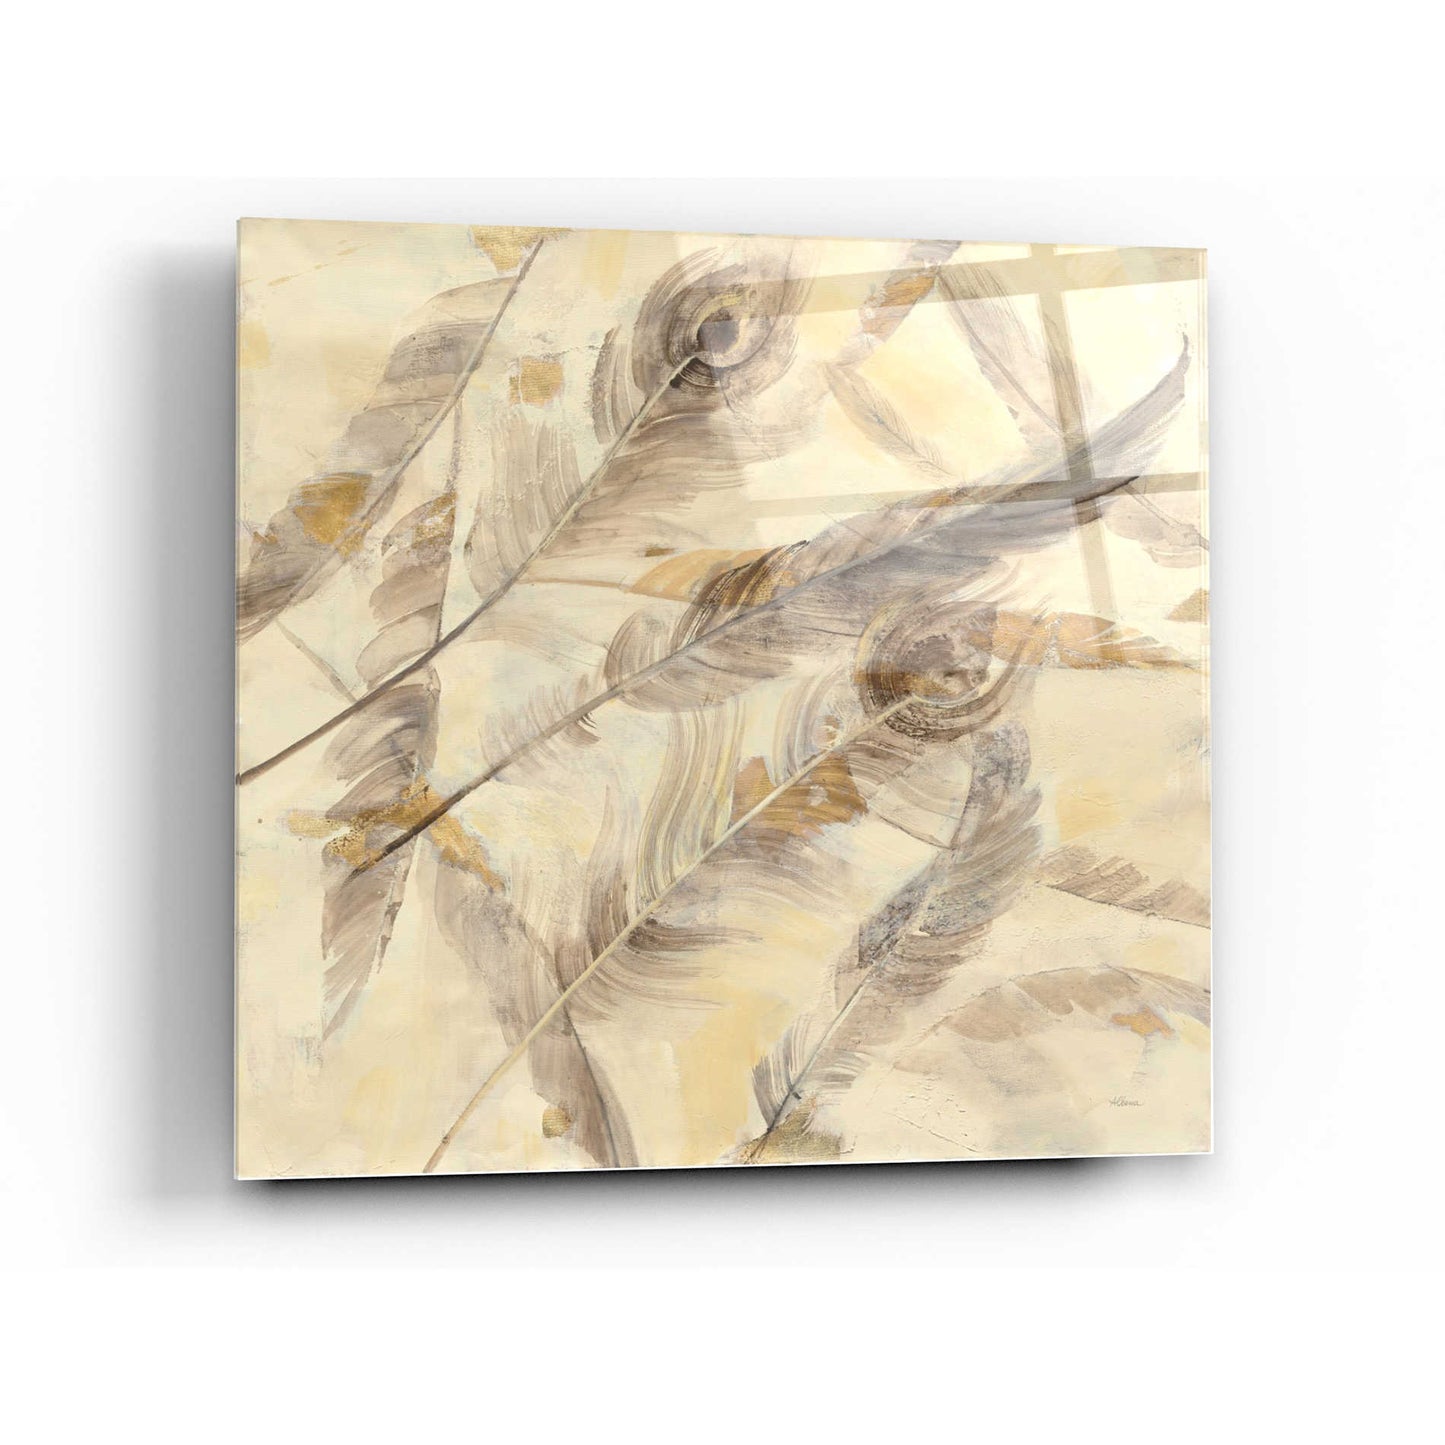 Epic Art 'Falling Feathers' by Albena Hristova, Acrylic Glass Wall Art,24x24